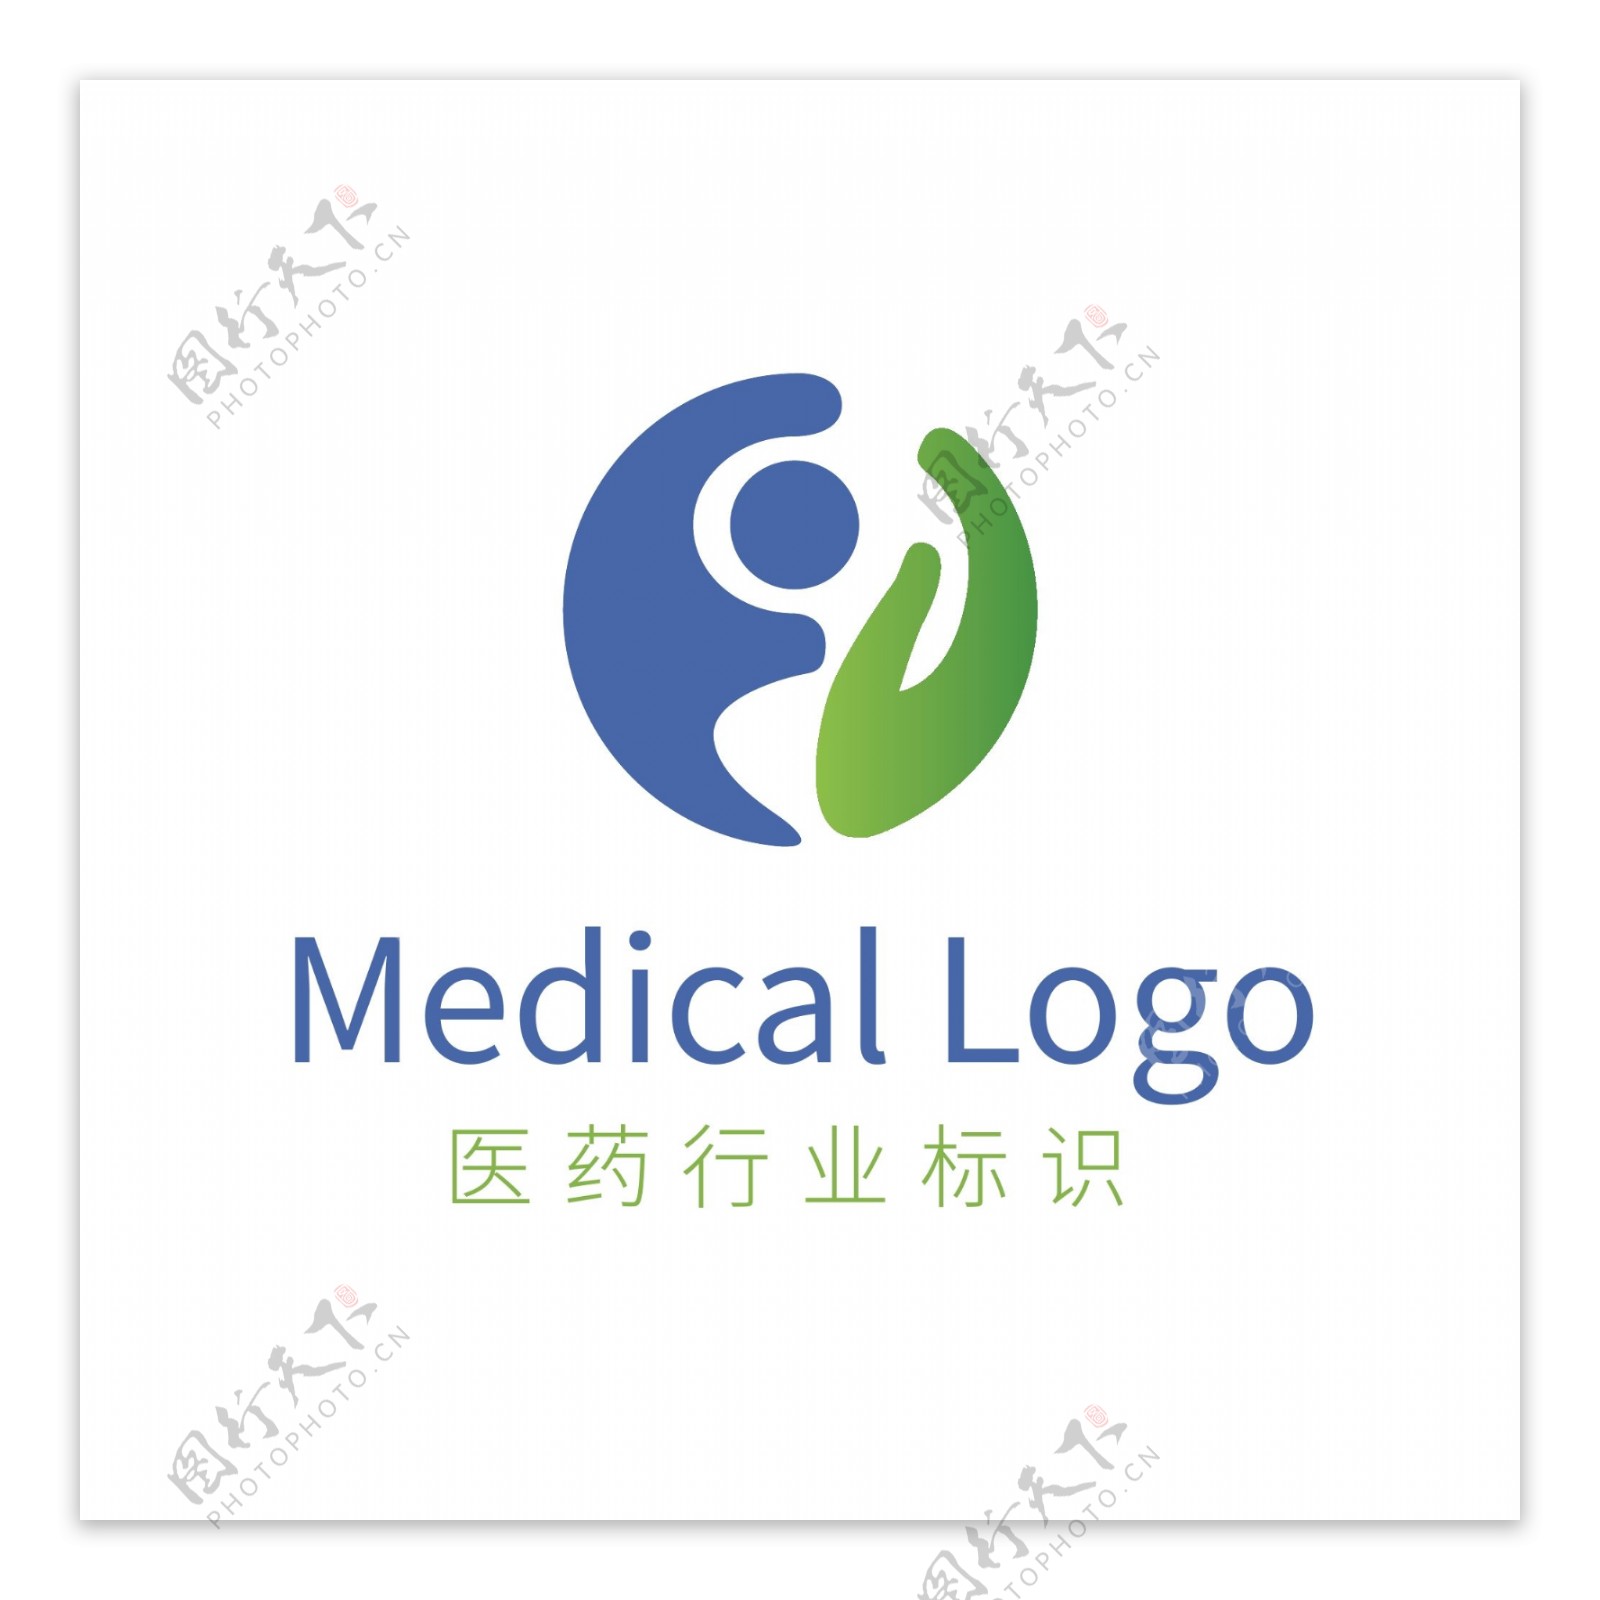 蓝色简洁呵护医药卫生健康行业logo